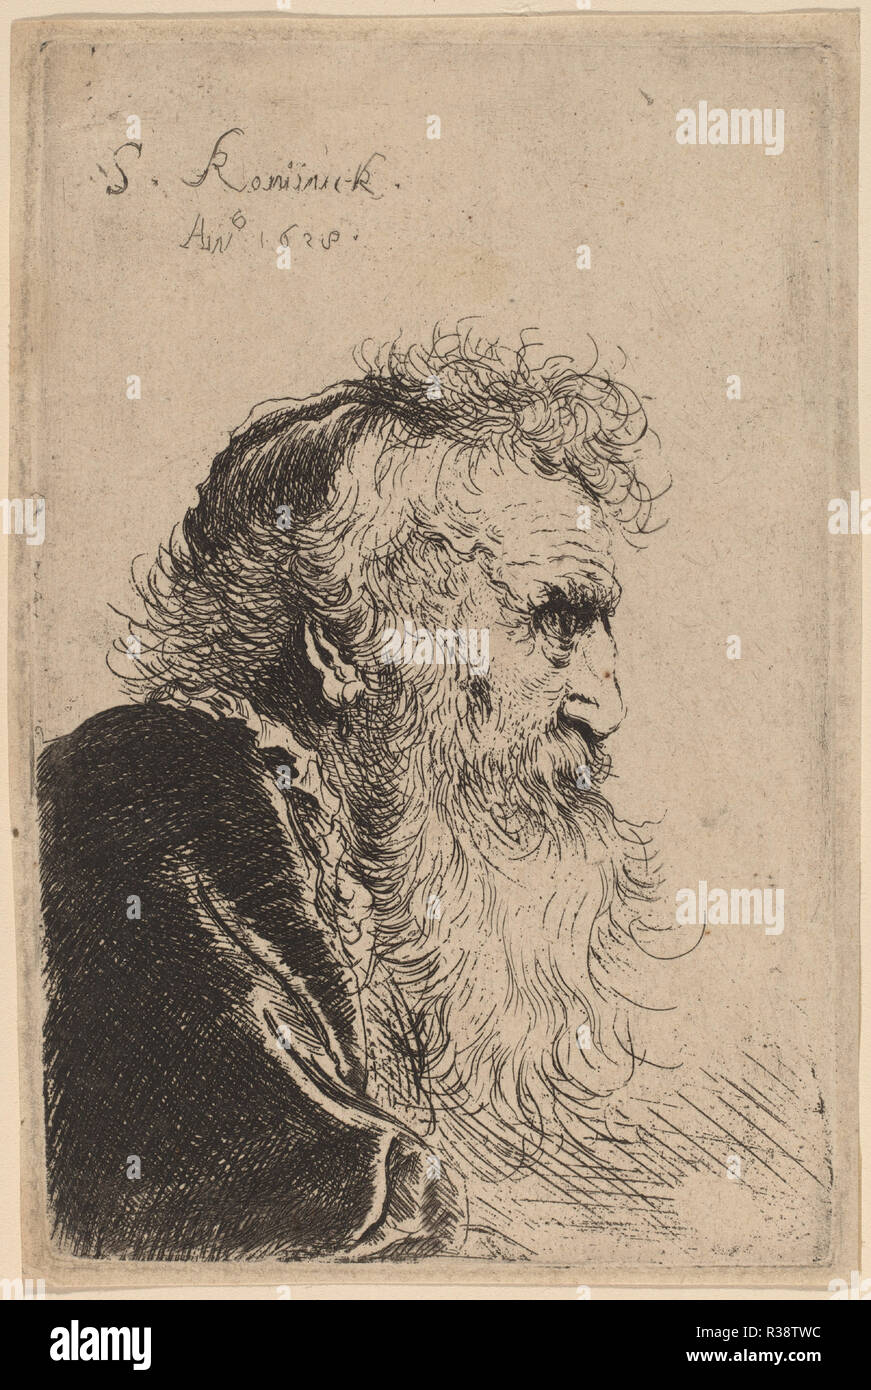 Busto di un vecchio uomo nel profilo, rivolto verso destra. Data: 1638. Medio: l'attacco. Museo: National Gallery of Art di Washington DC. Autore: Salomon Koninck. Foto Stock